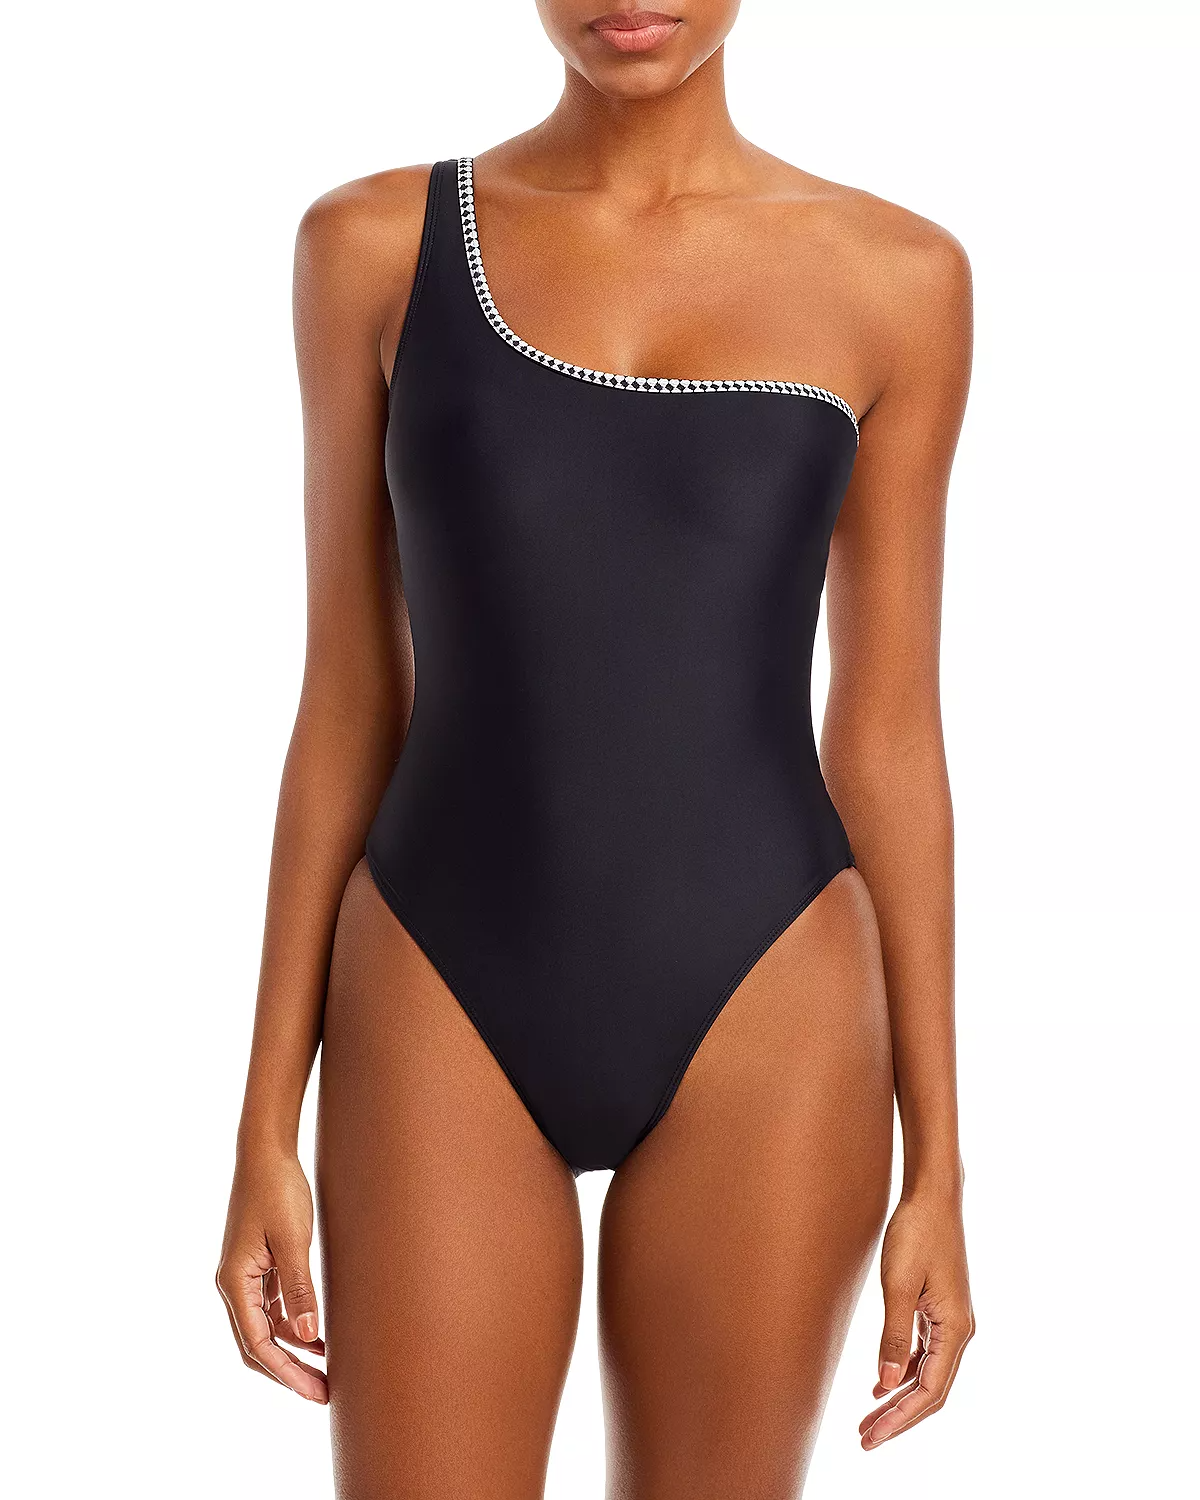 Teardrop Body Type Asymmetricel Neckline Swimsuit